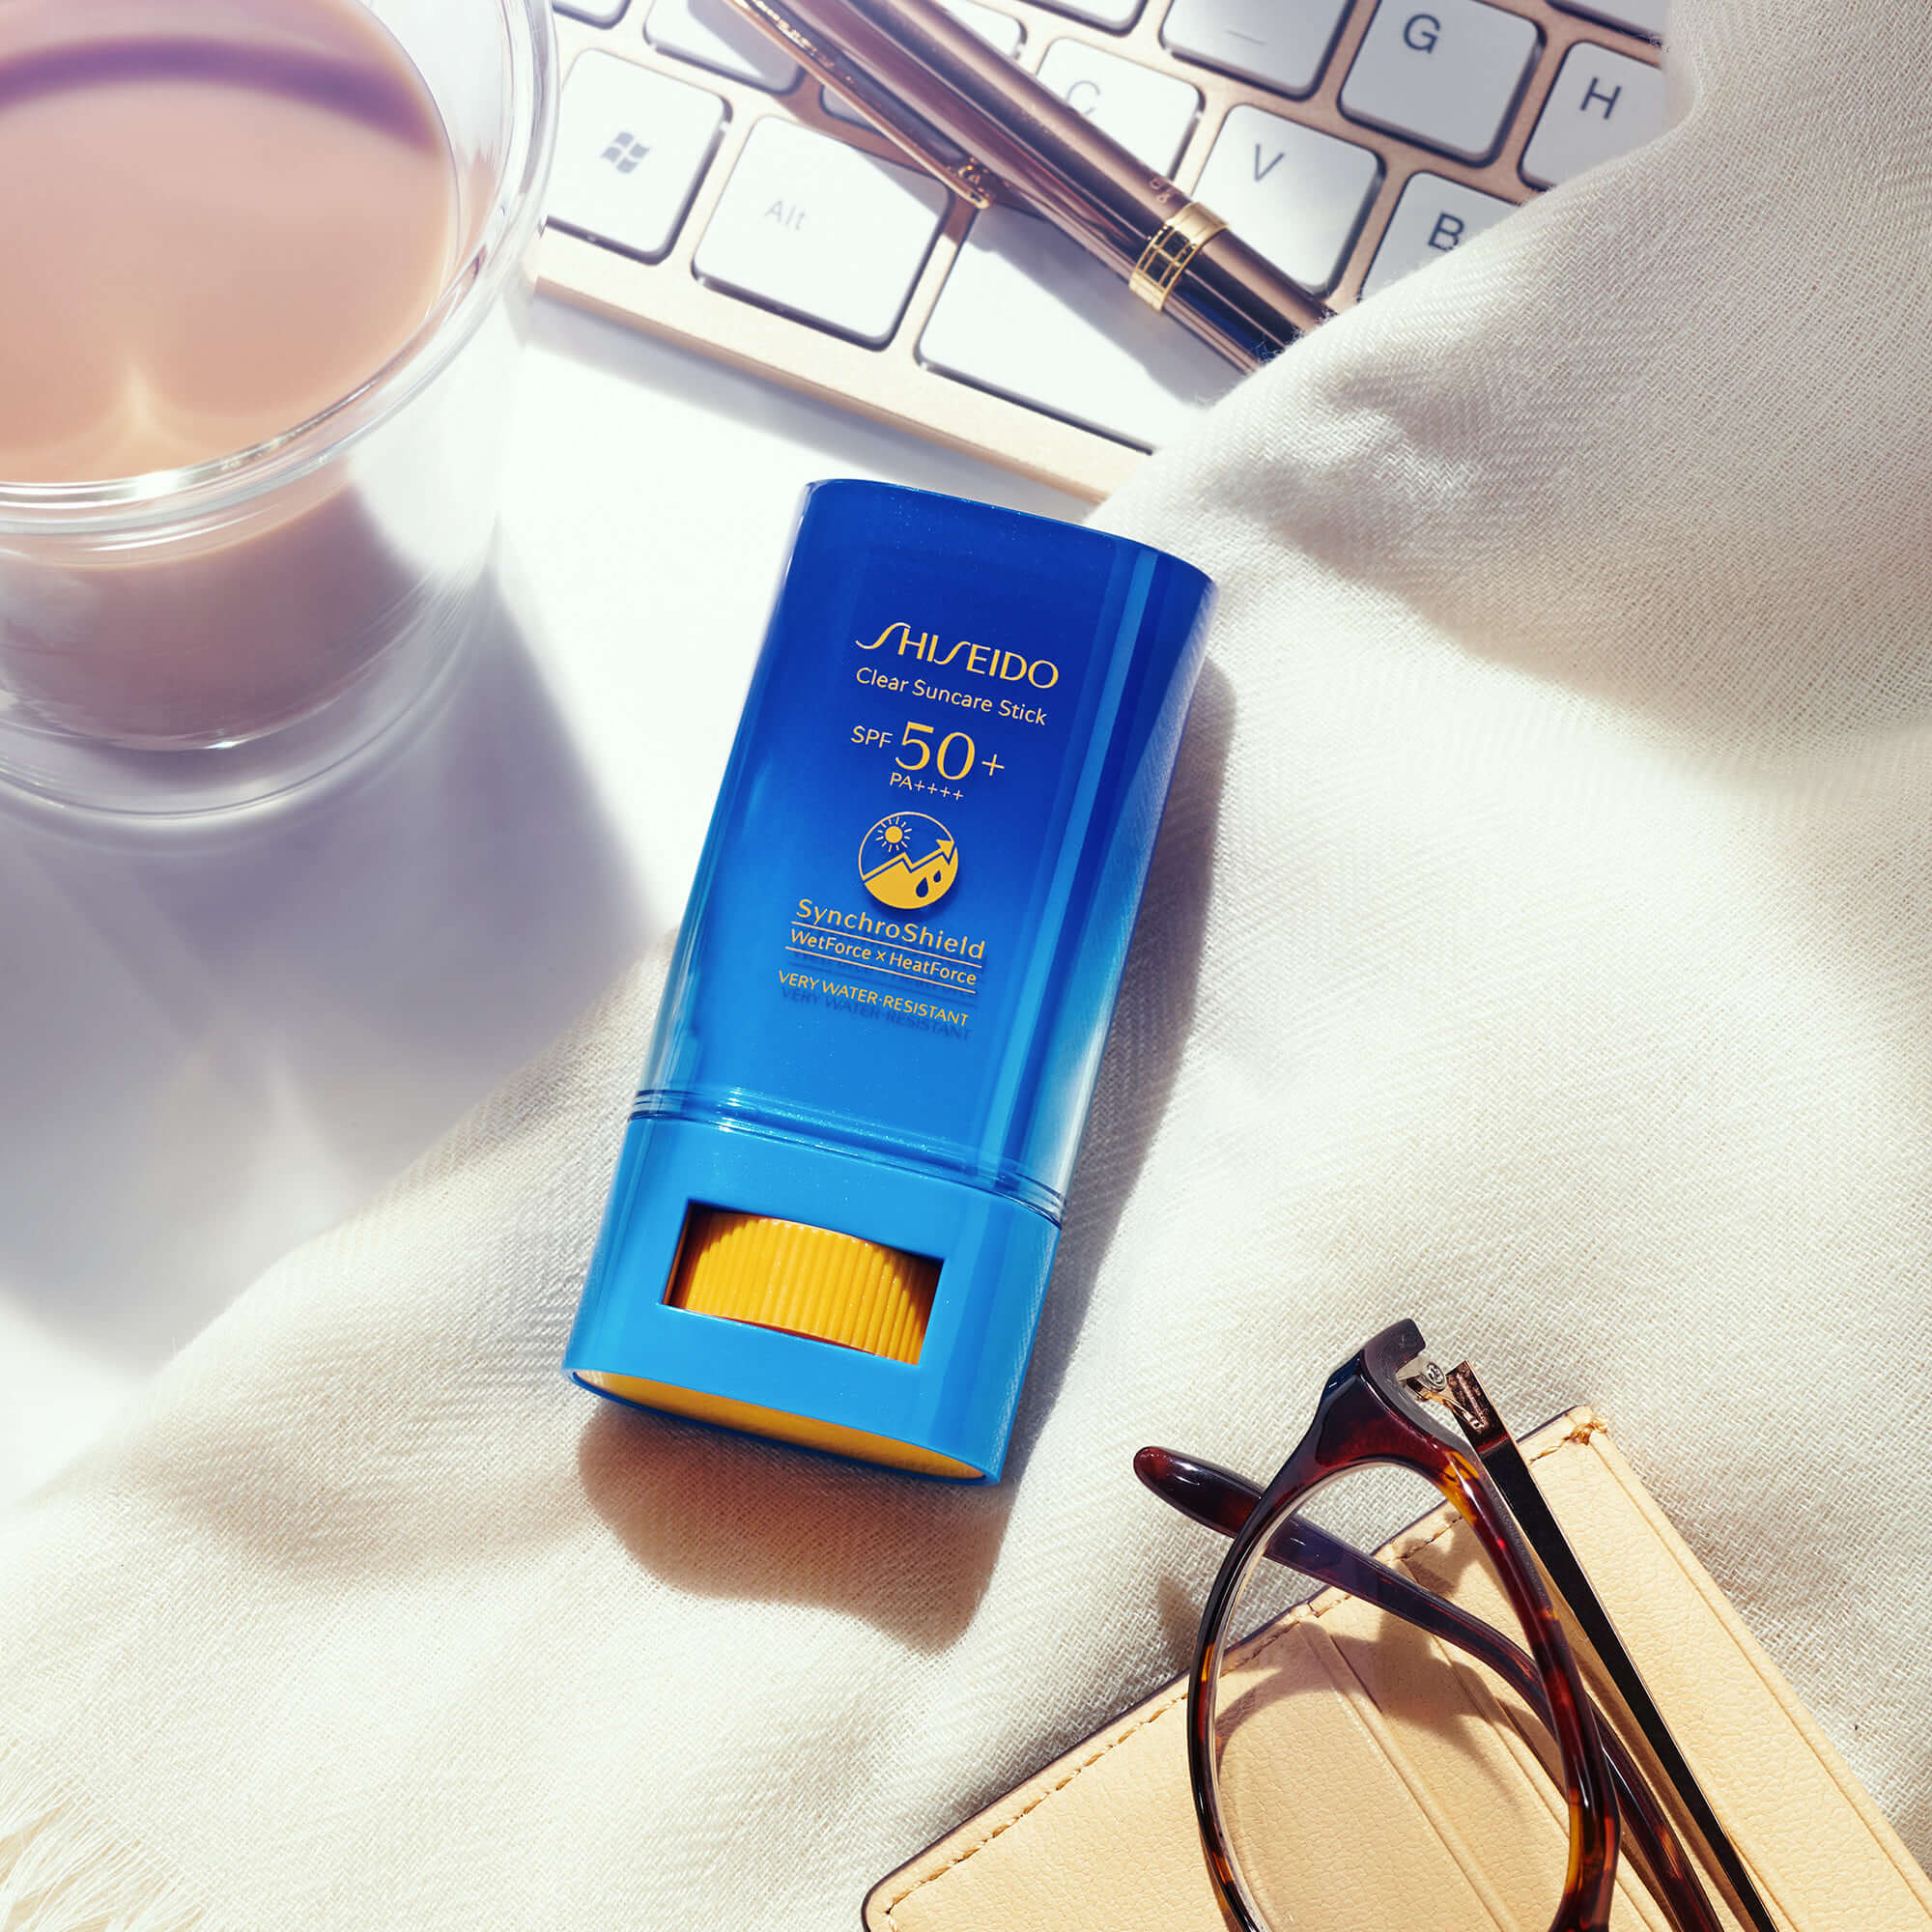 Shiseido Clear Sunscreen Stick SPF 50+ PA+++ 20 g กันแดดสติ๊กสูตรใหม่ล่าสุด! จาก Shiseido พกพาง่าย หยิบทาเมื่อไรก็ได้ สามารถทาได้โดยไม่ทำให้มือเลอะ (Touch-Free) สะดวกรวดเร็ว และยังสามารถทาทับเมคอัพได้ โดยไม่ทำให้เป็นคราบ  ปกป้องผิวคุณจากแสงแดดและมลภาวะตลอดทั้งวัน สะดวกทุกที่ ทุกเวลา